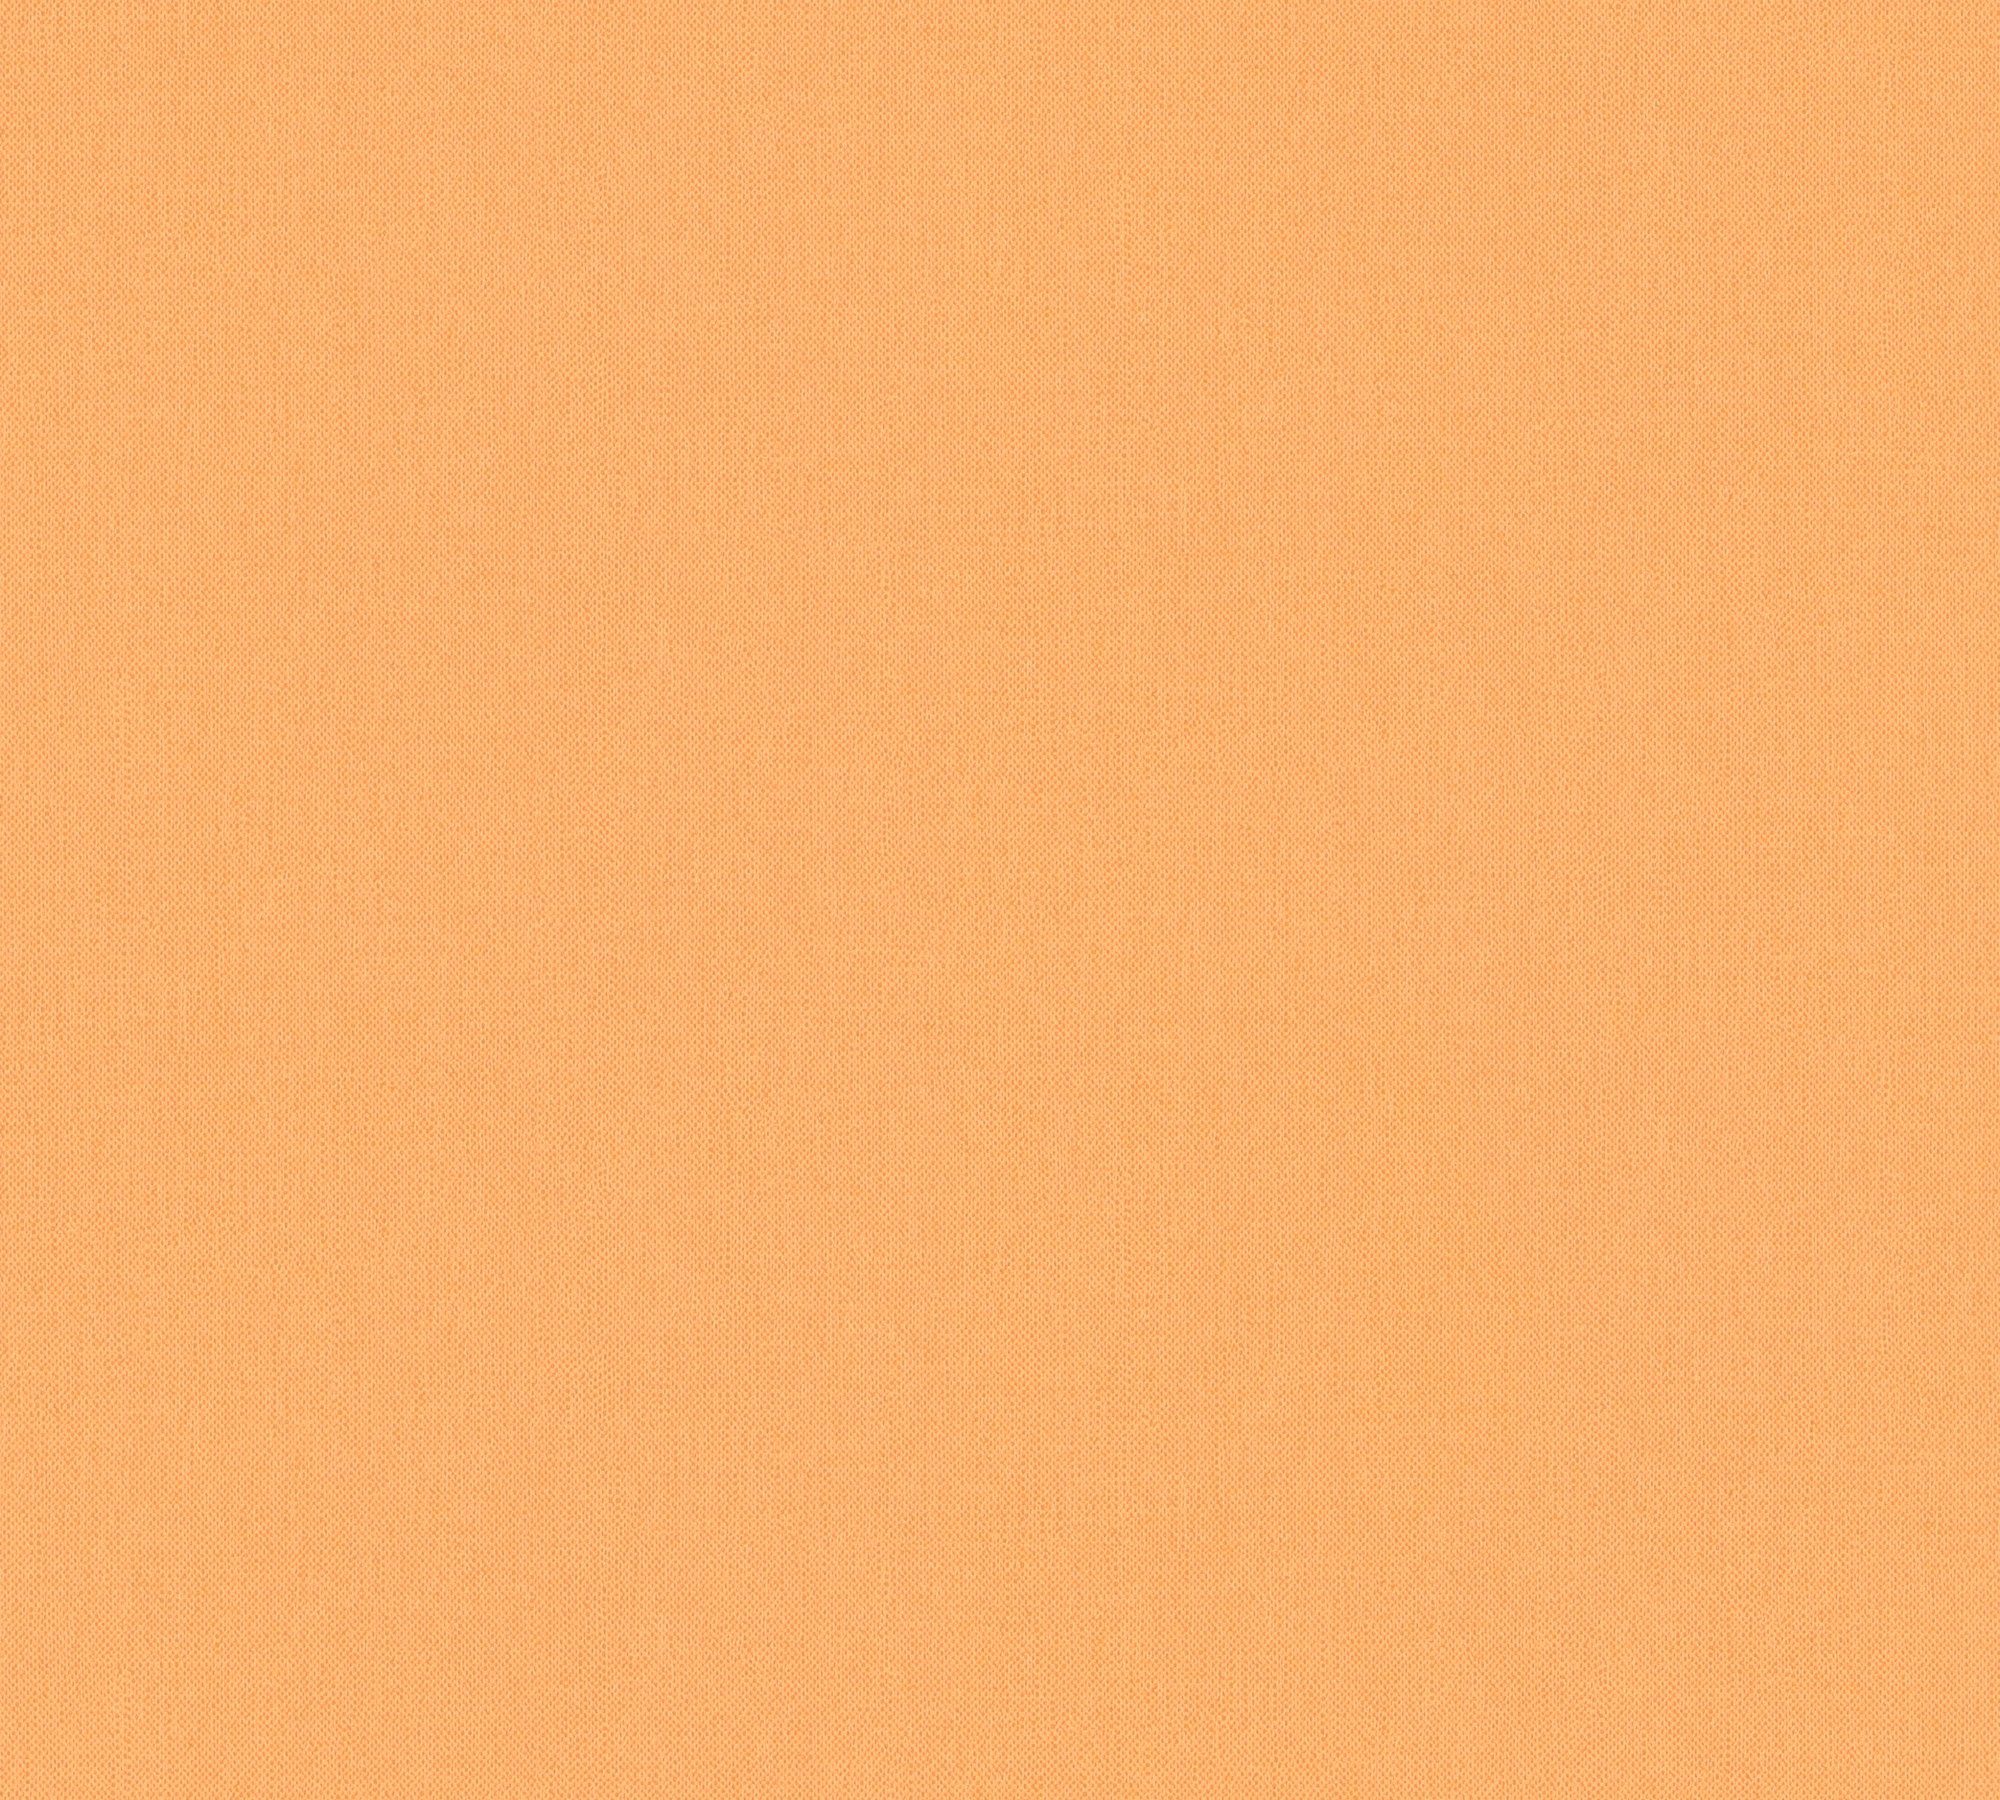 Vorzüglicher Architects Paper Vliestapete Floral einfarbig glatt, Impression, orange2 unifarben, Tapete einfarbig, Uni